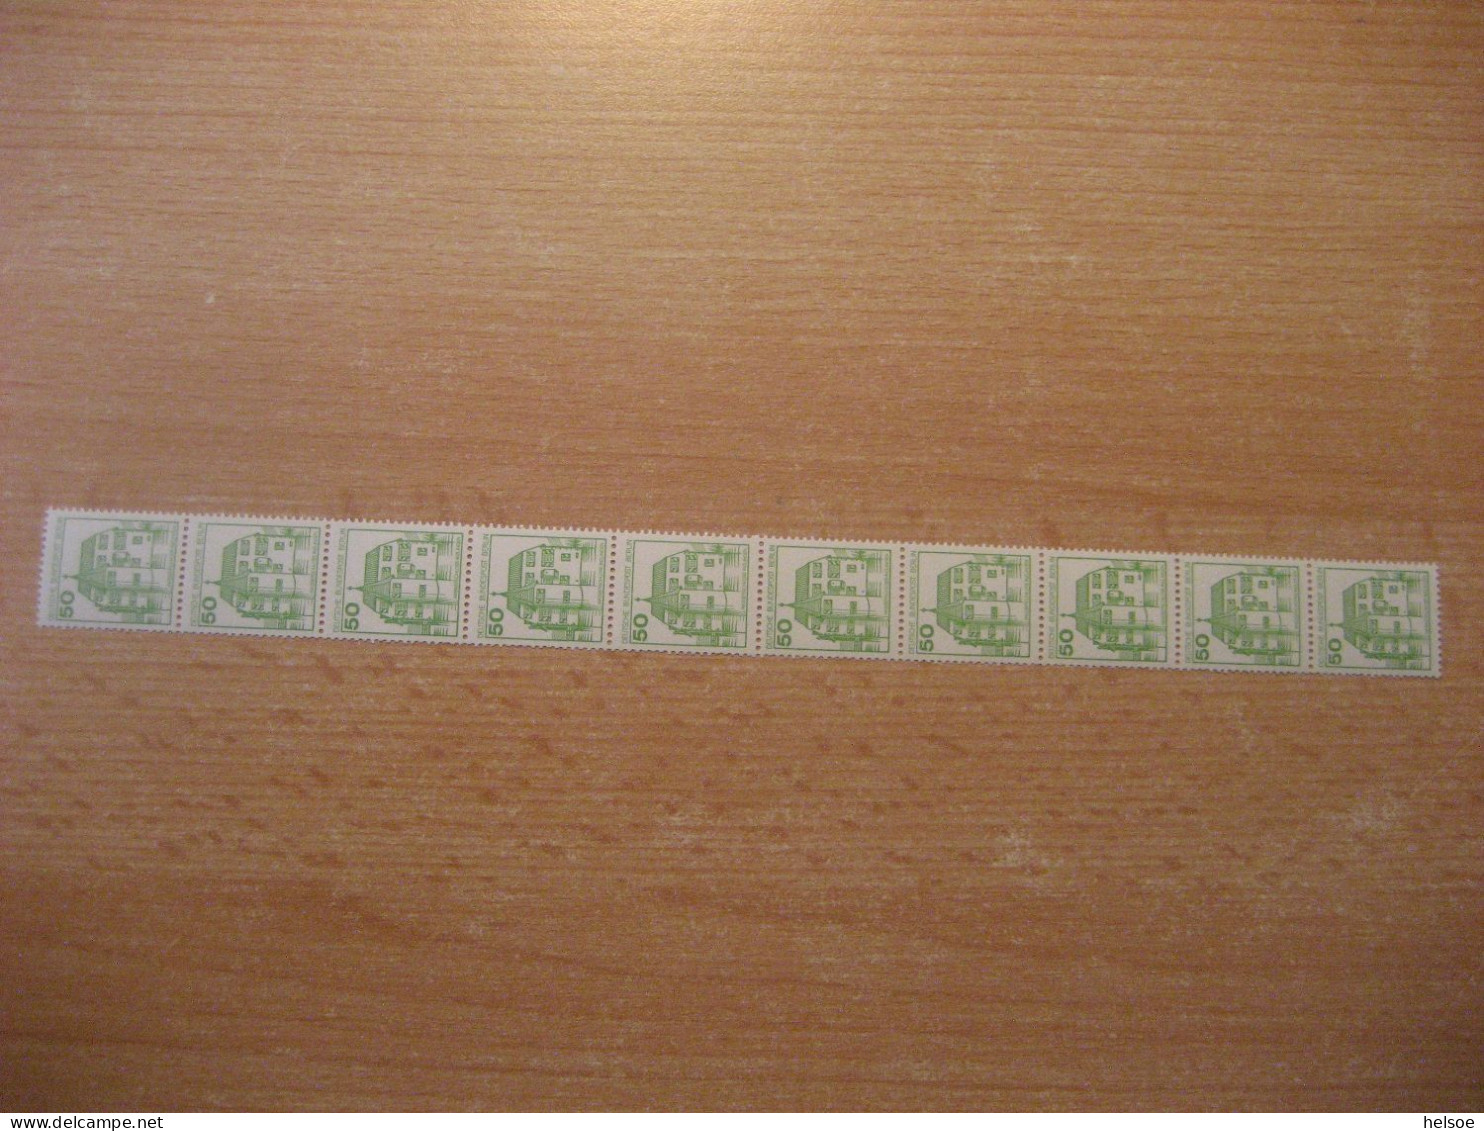 Deutschland Westberlin 1980- Rollenmarke 50 Pf. Rücks. Zählnummer, Mi. 537 ** Ungebraucht - Rolstempels